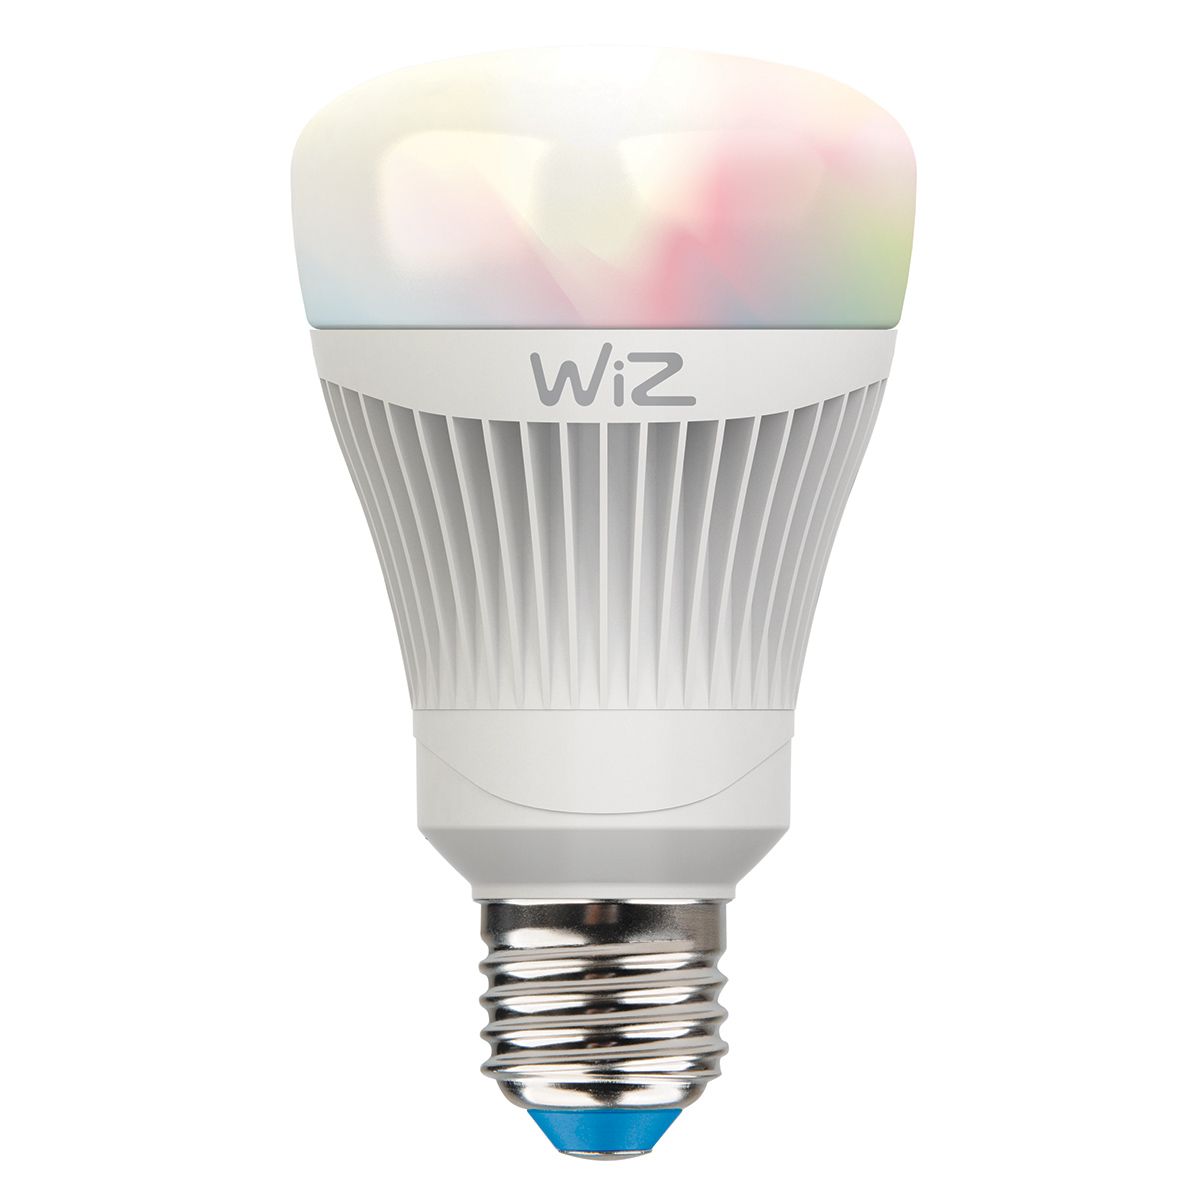 WiZ, les ampoules et luminaires connectés – Life and Style